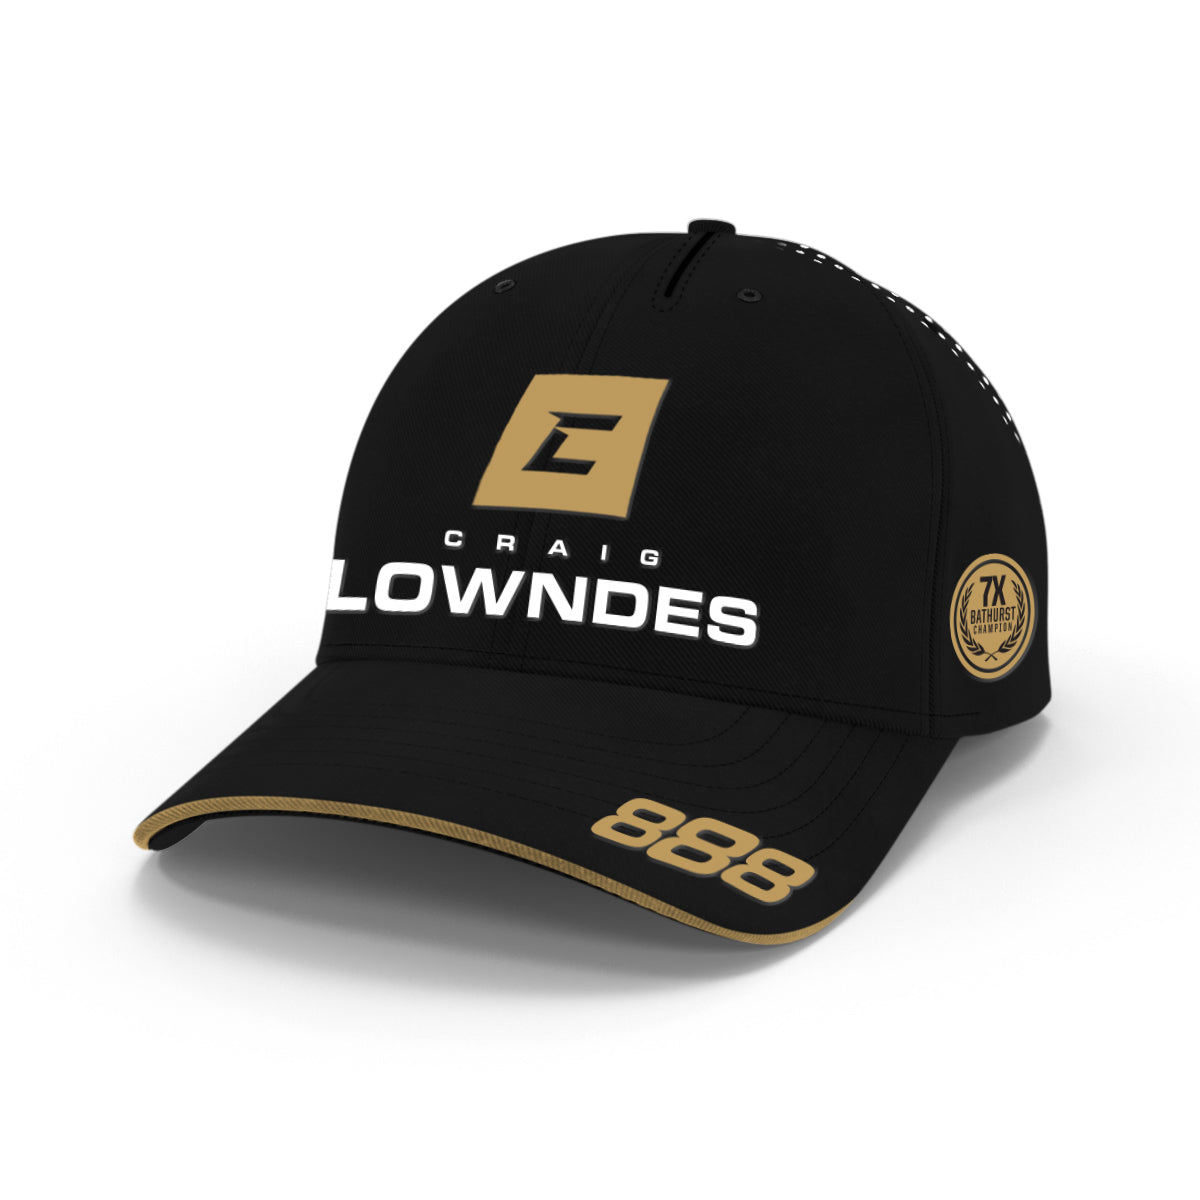 Craig Lowndes Achievement Series Cap - Gold